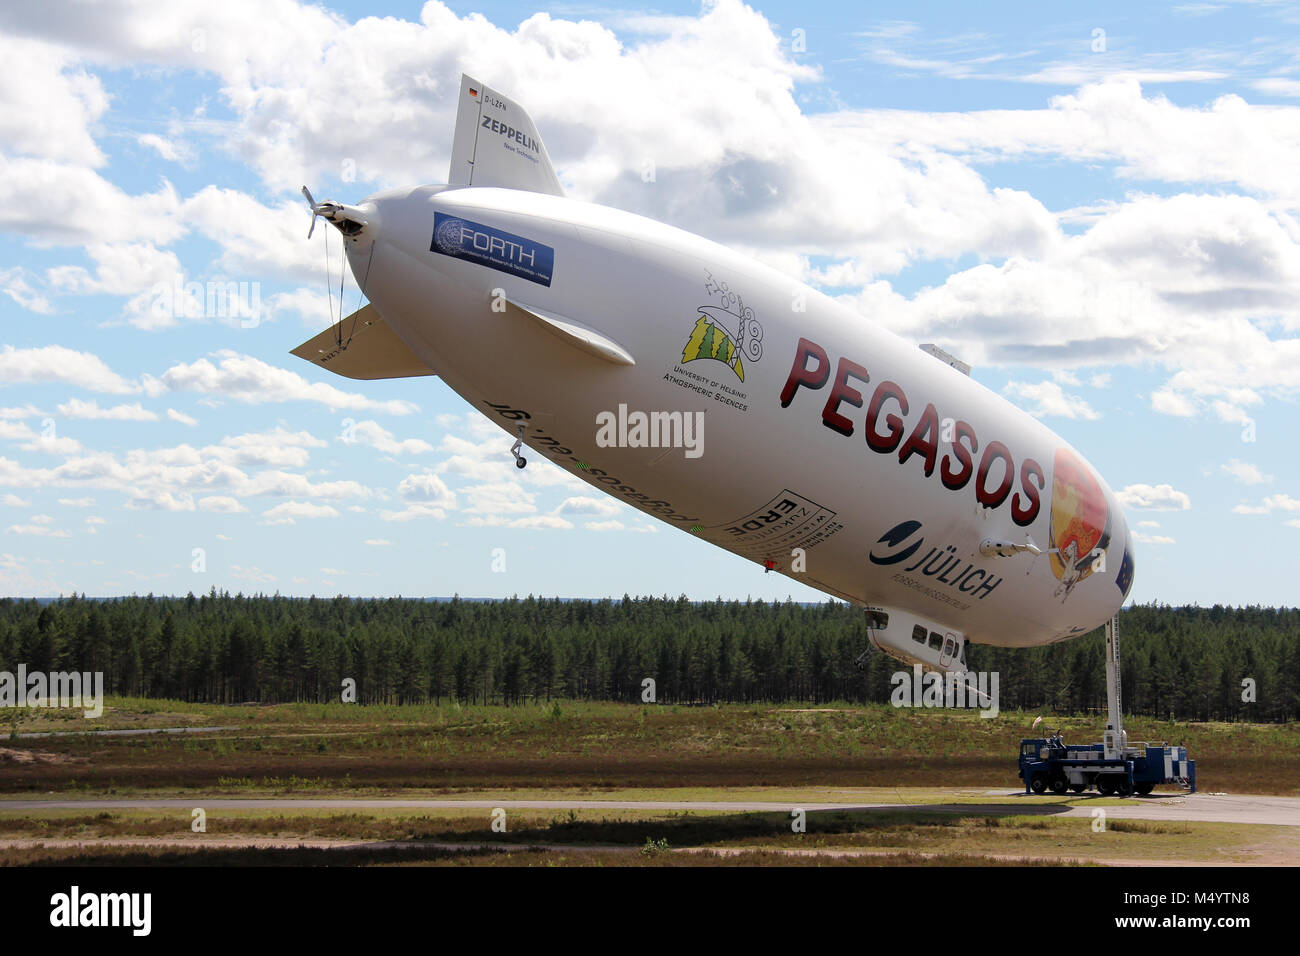 JAMIJARVI, Finlandia - 15 giugno 2013: Pegasos Zeppelin NT dirigibile attaccato al montante in Jamijarvi, Finlandia il 15 giugno 2013 dopo aver completato la ca. 30 ri Foto Stock